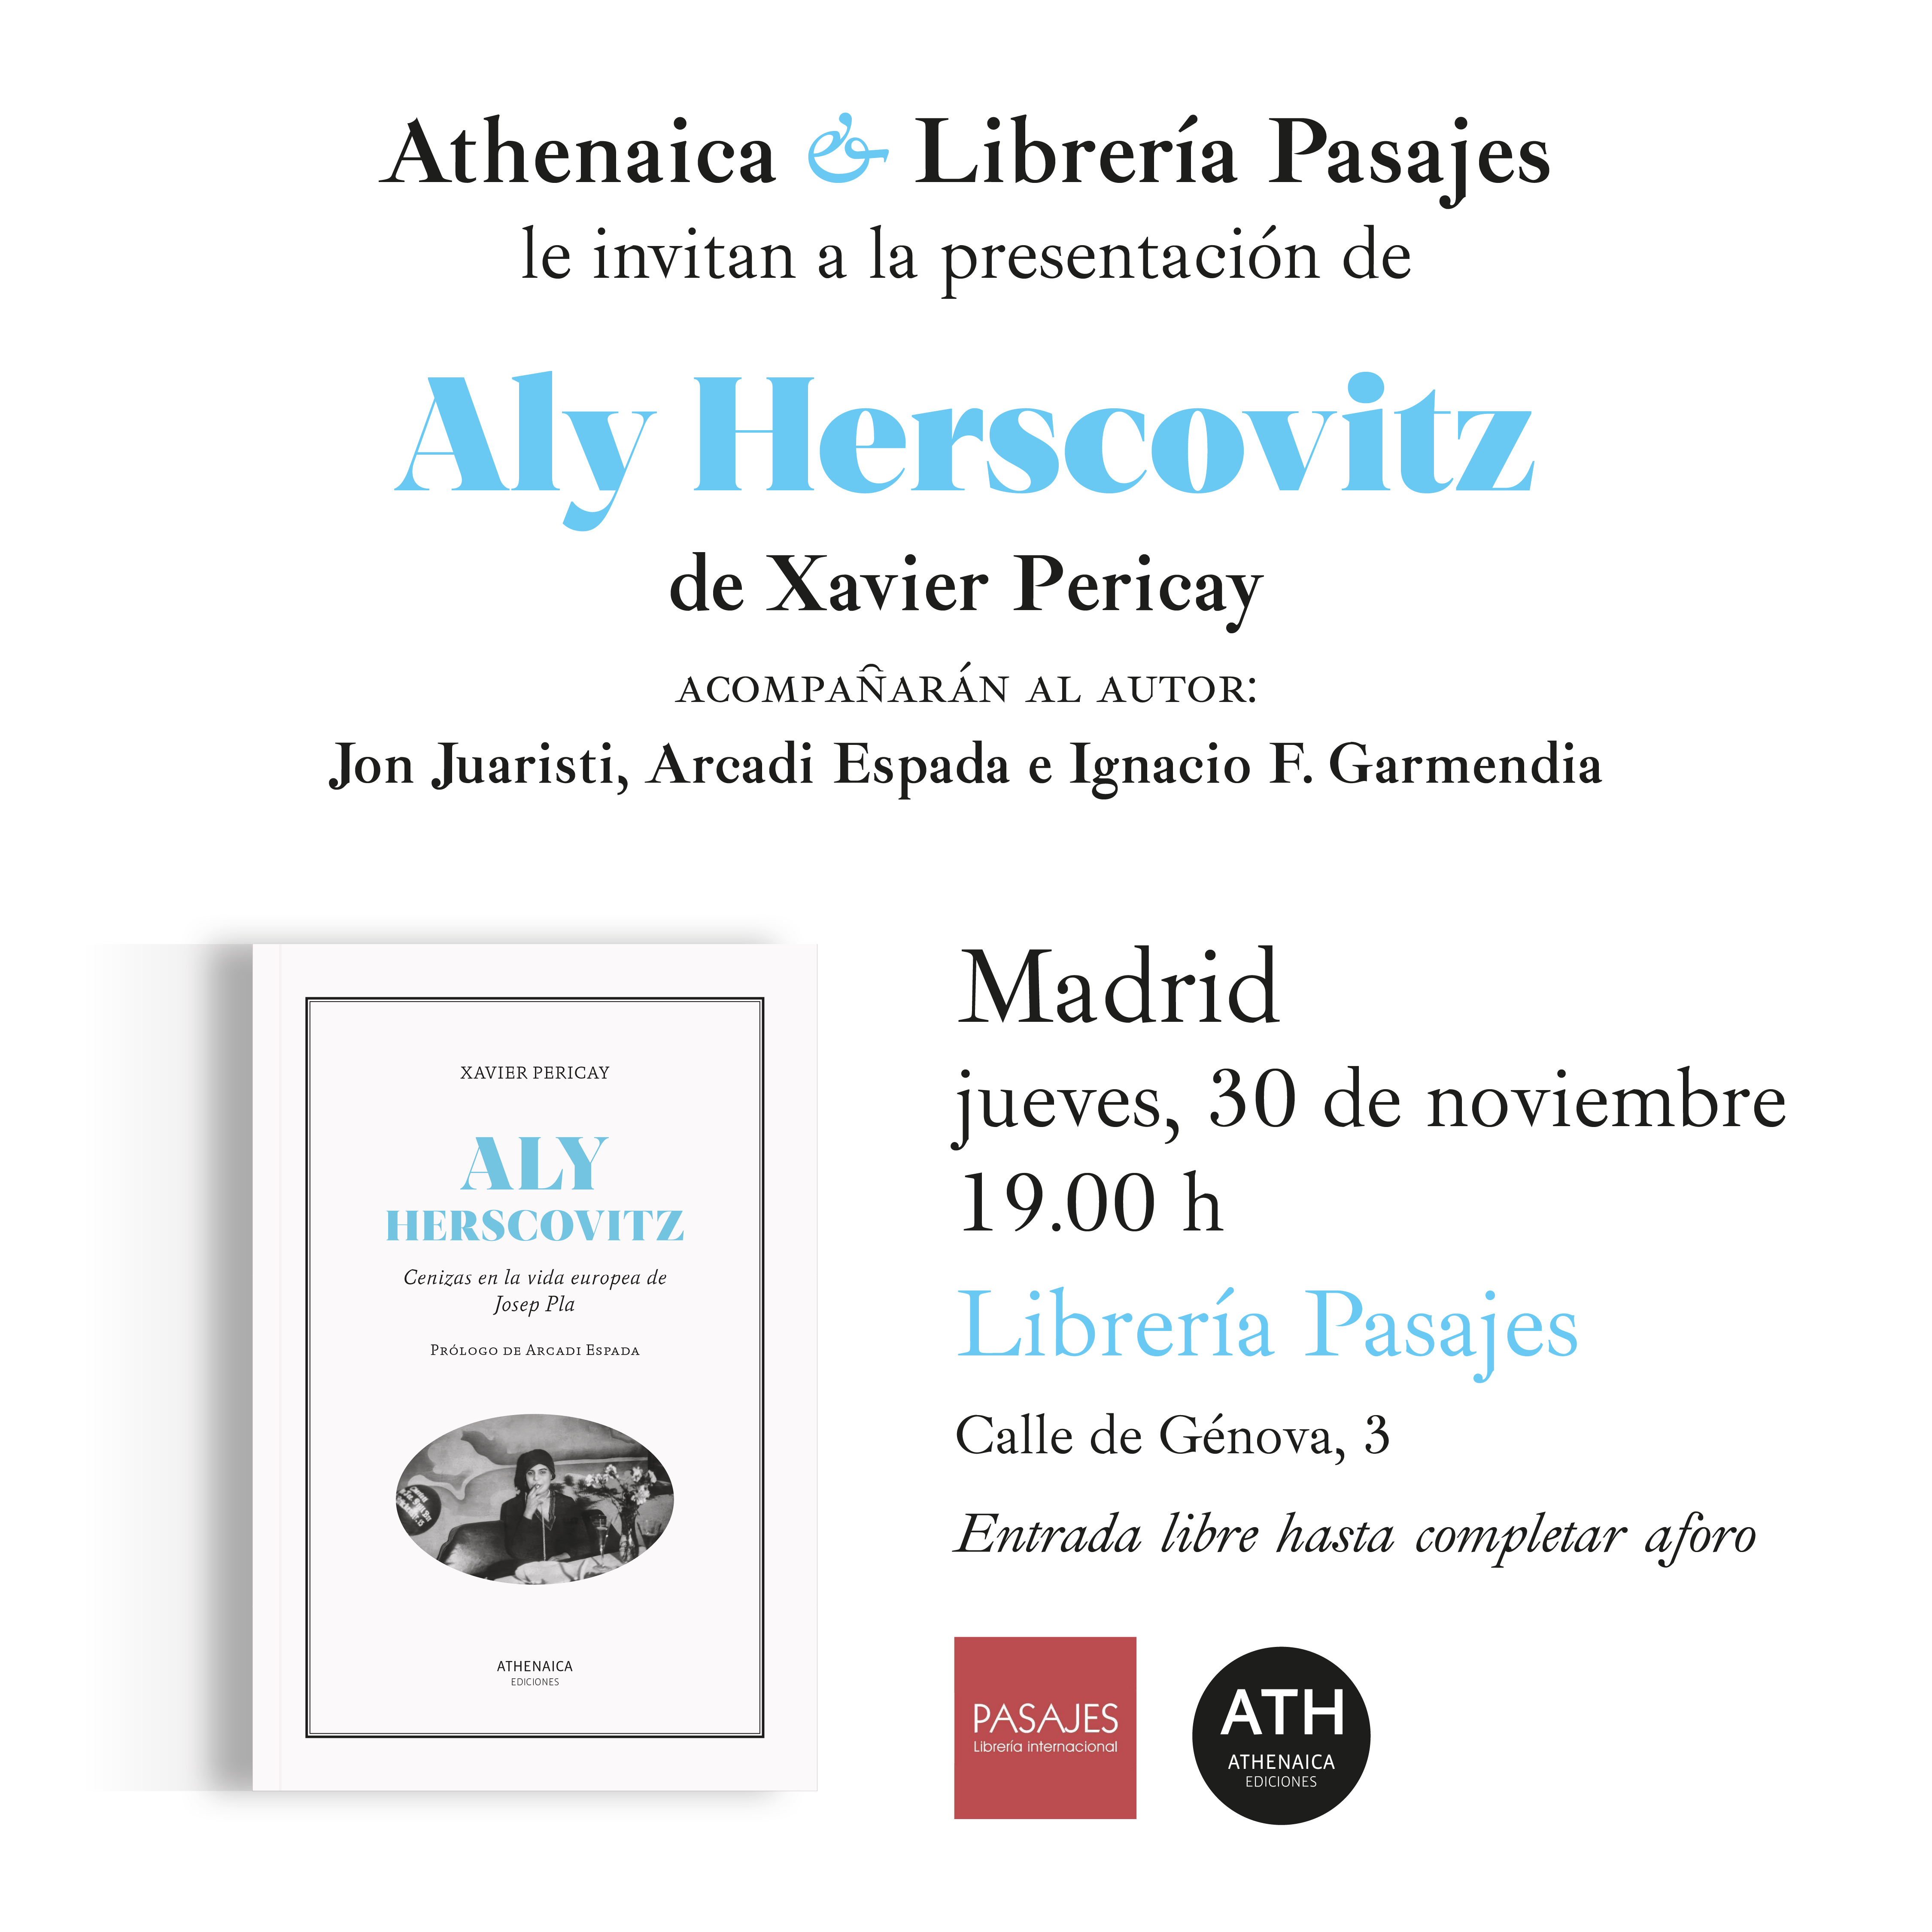 PRESENTACIÓN - Xavier Pericay, "Aly Herscovitz: Cenizas en la vida europea de Josep Pla”, Athenaica, 2023